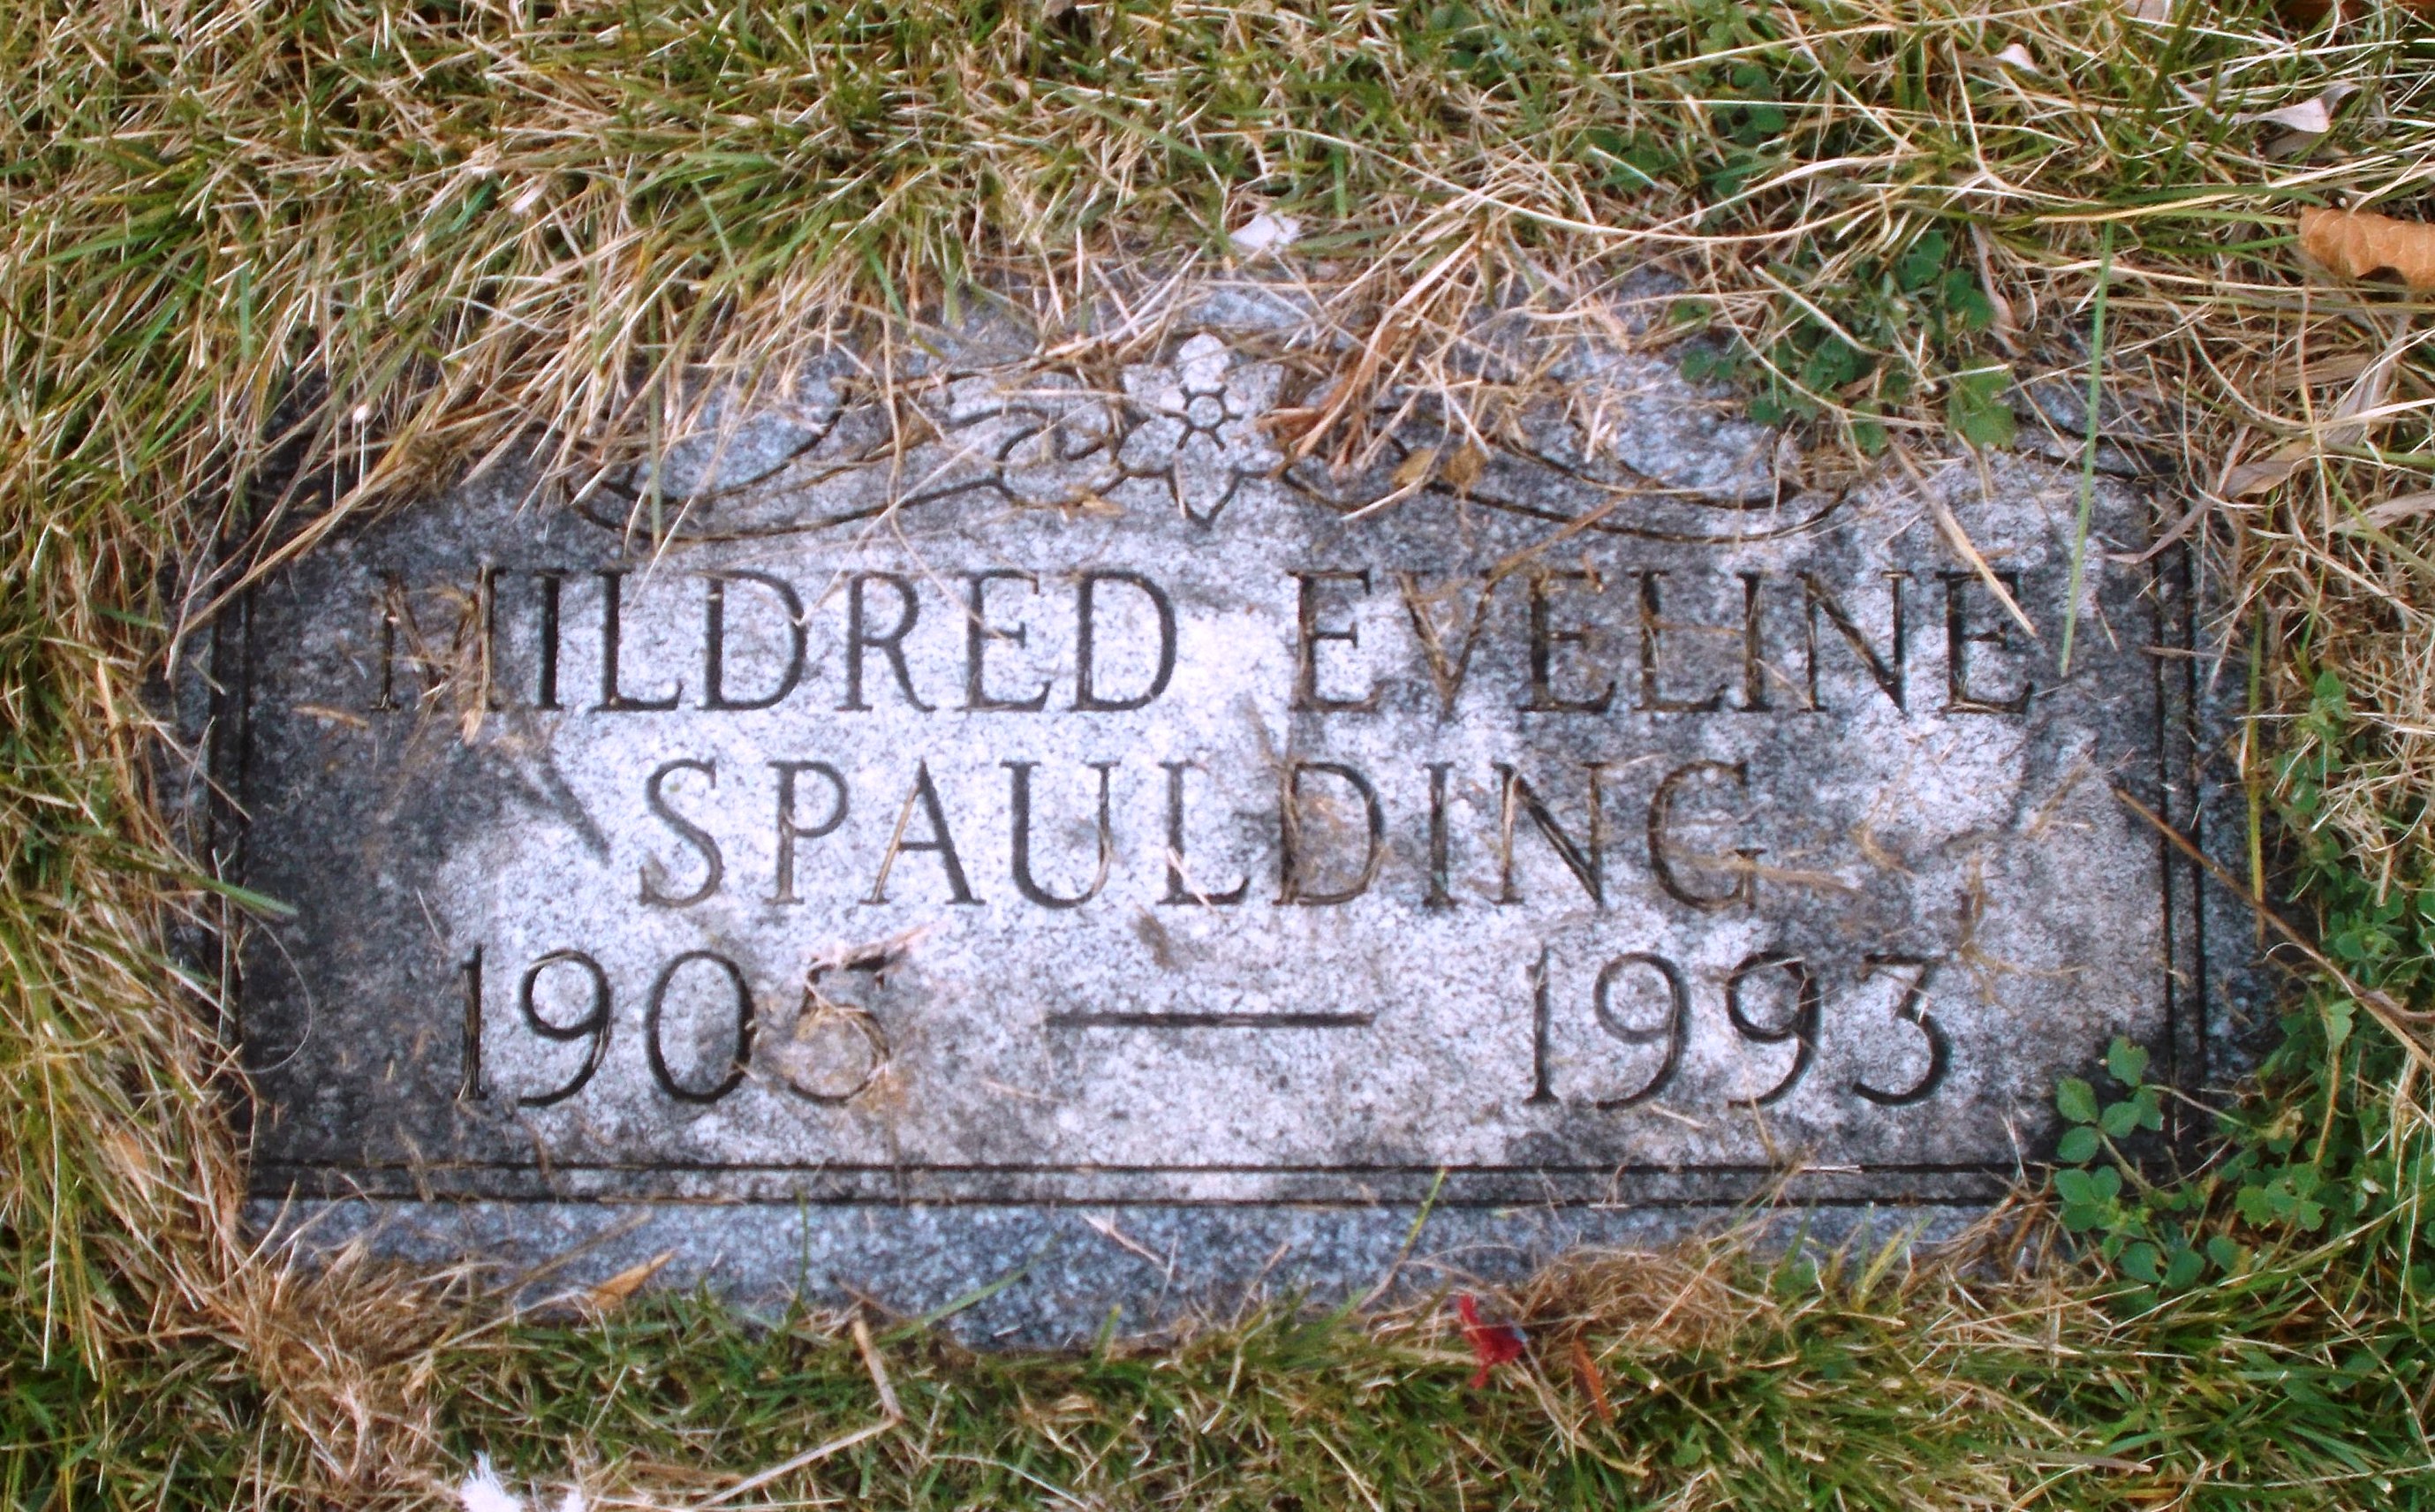 Mildred Eveline Spaulding